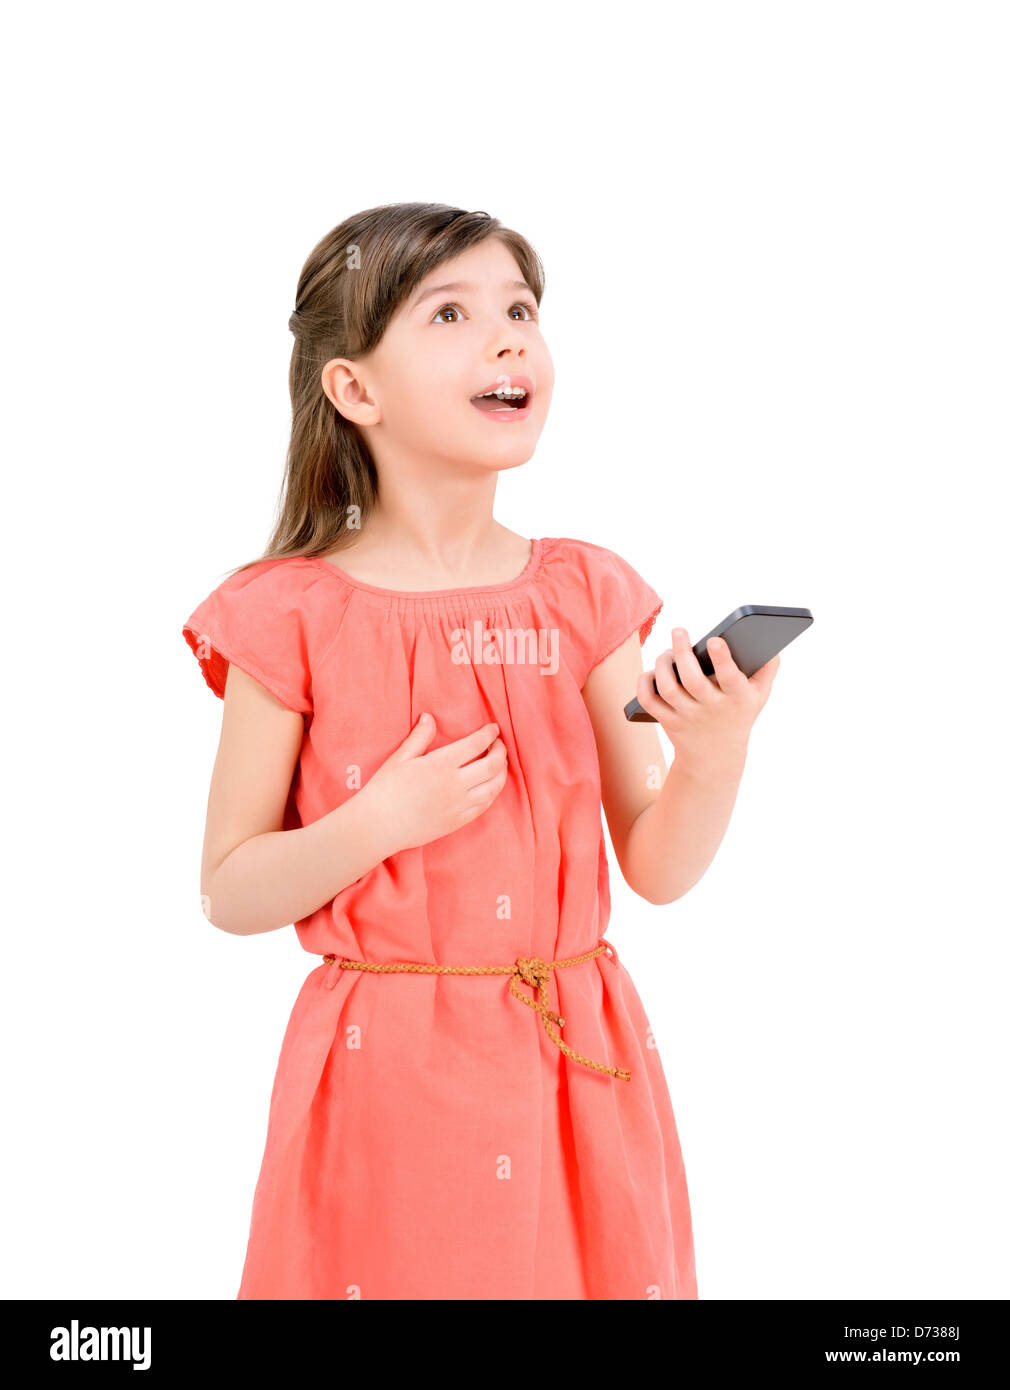 Inspiré cute little girl in red dress looking up et tenant à la main un téléphone mobile. Isolé sur fond blanc. Banque D'Images